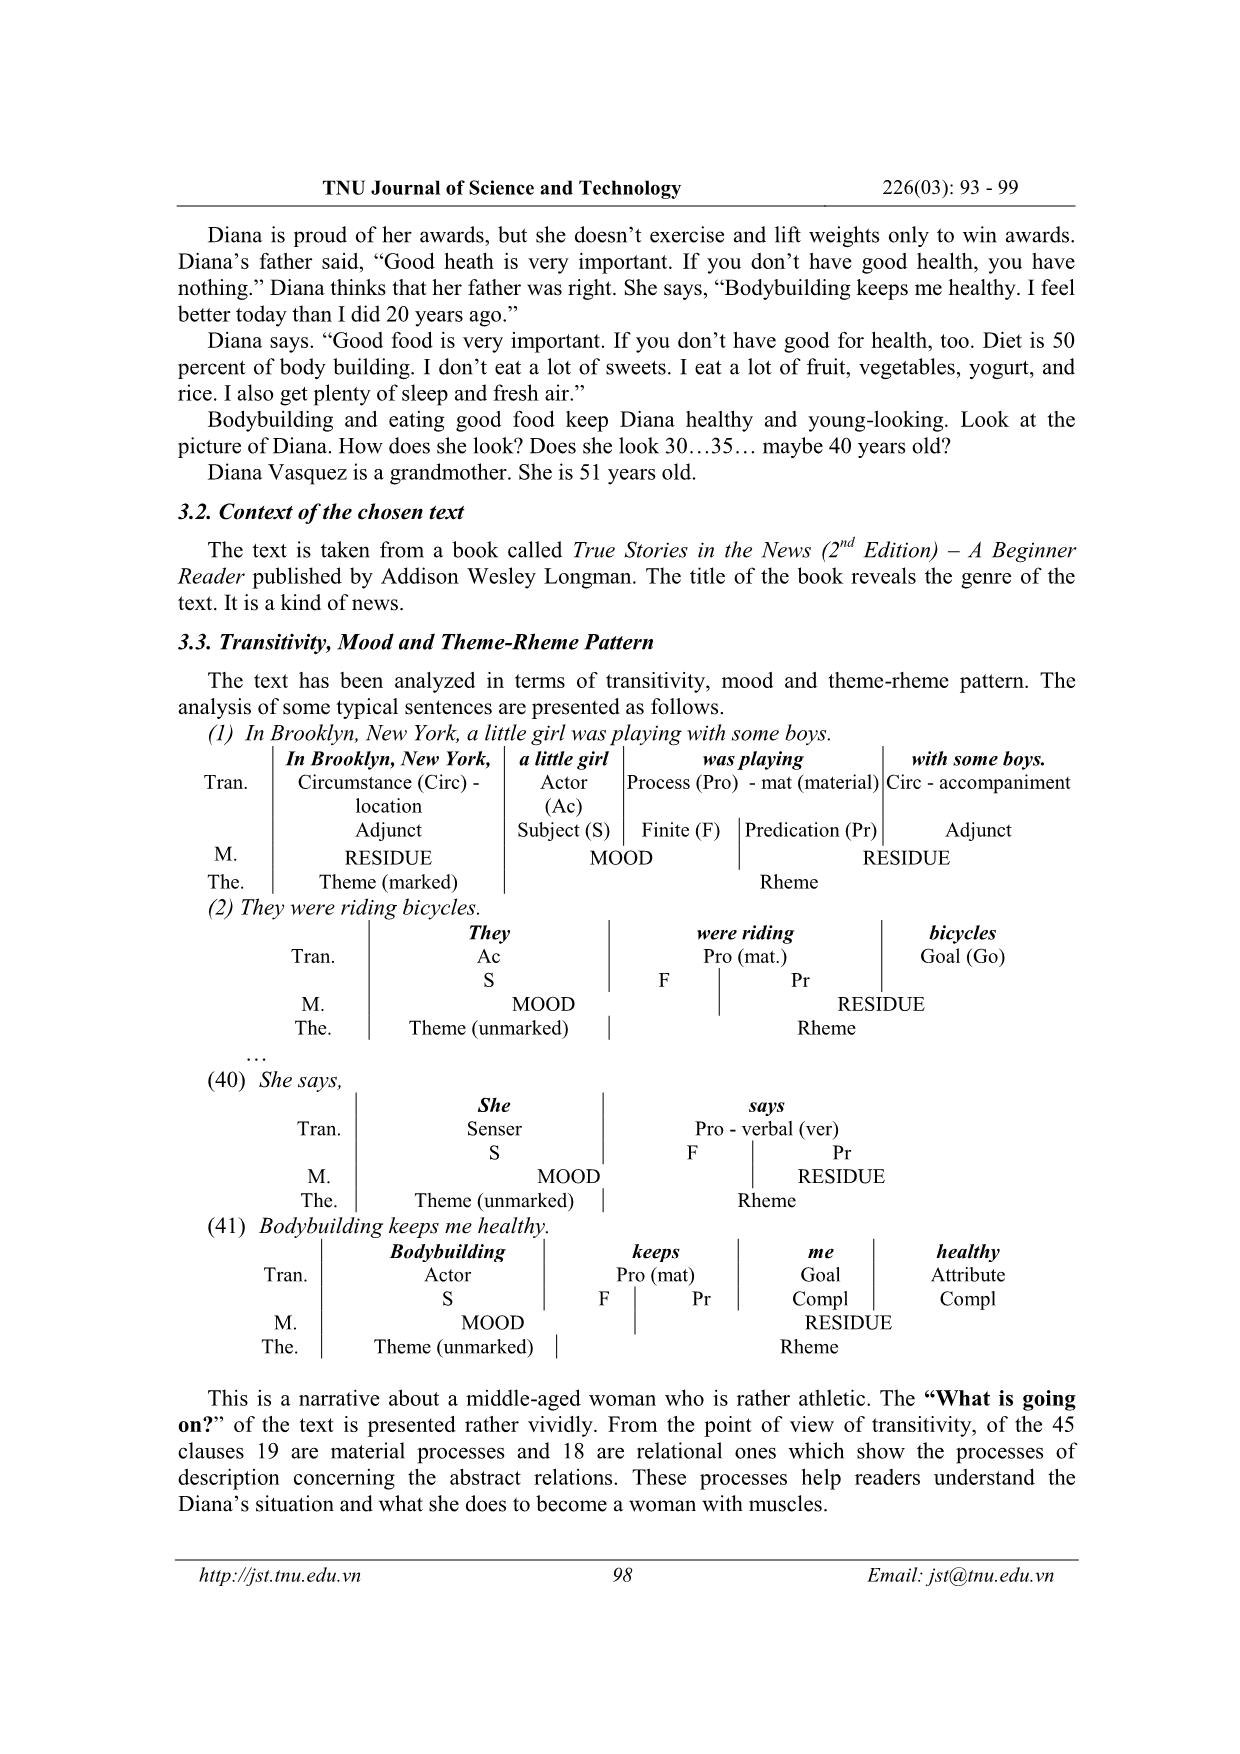 Phân tích hệ thống chuyển tác, thức và cấu trúc đề - Thuyết của văn bản “A grandmother with muscles” dựa vào lý thuyết ngữ pháp chức năng hệ thống của mark haliday trang 6